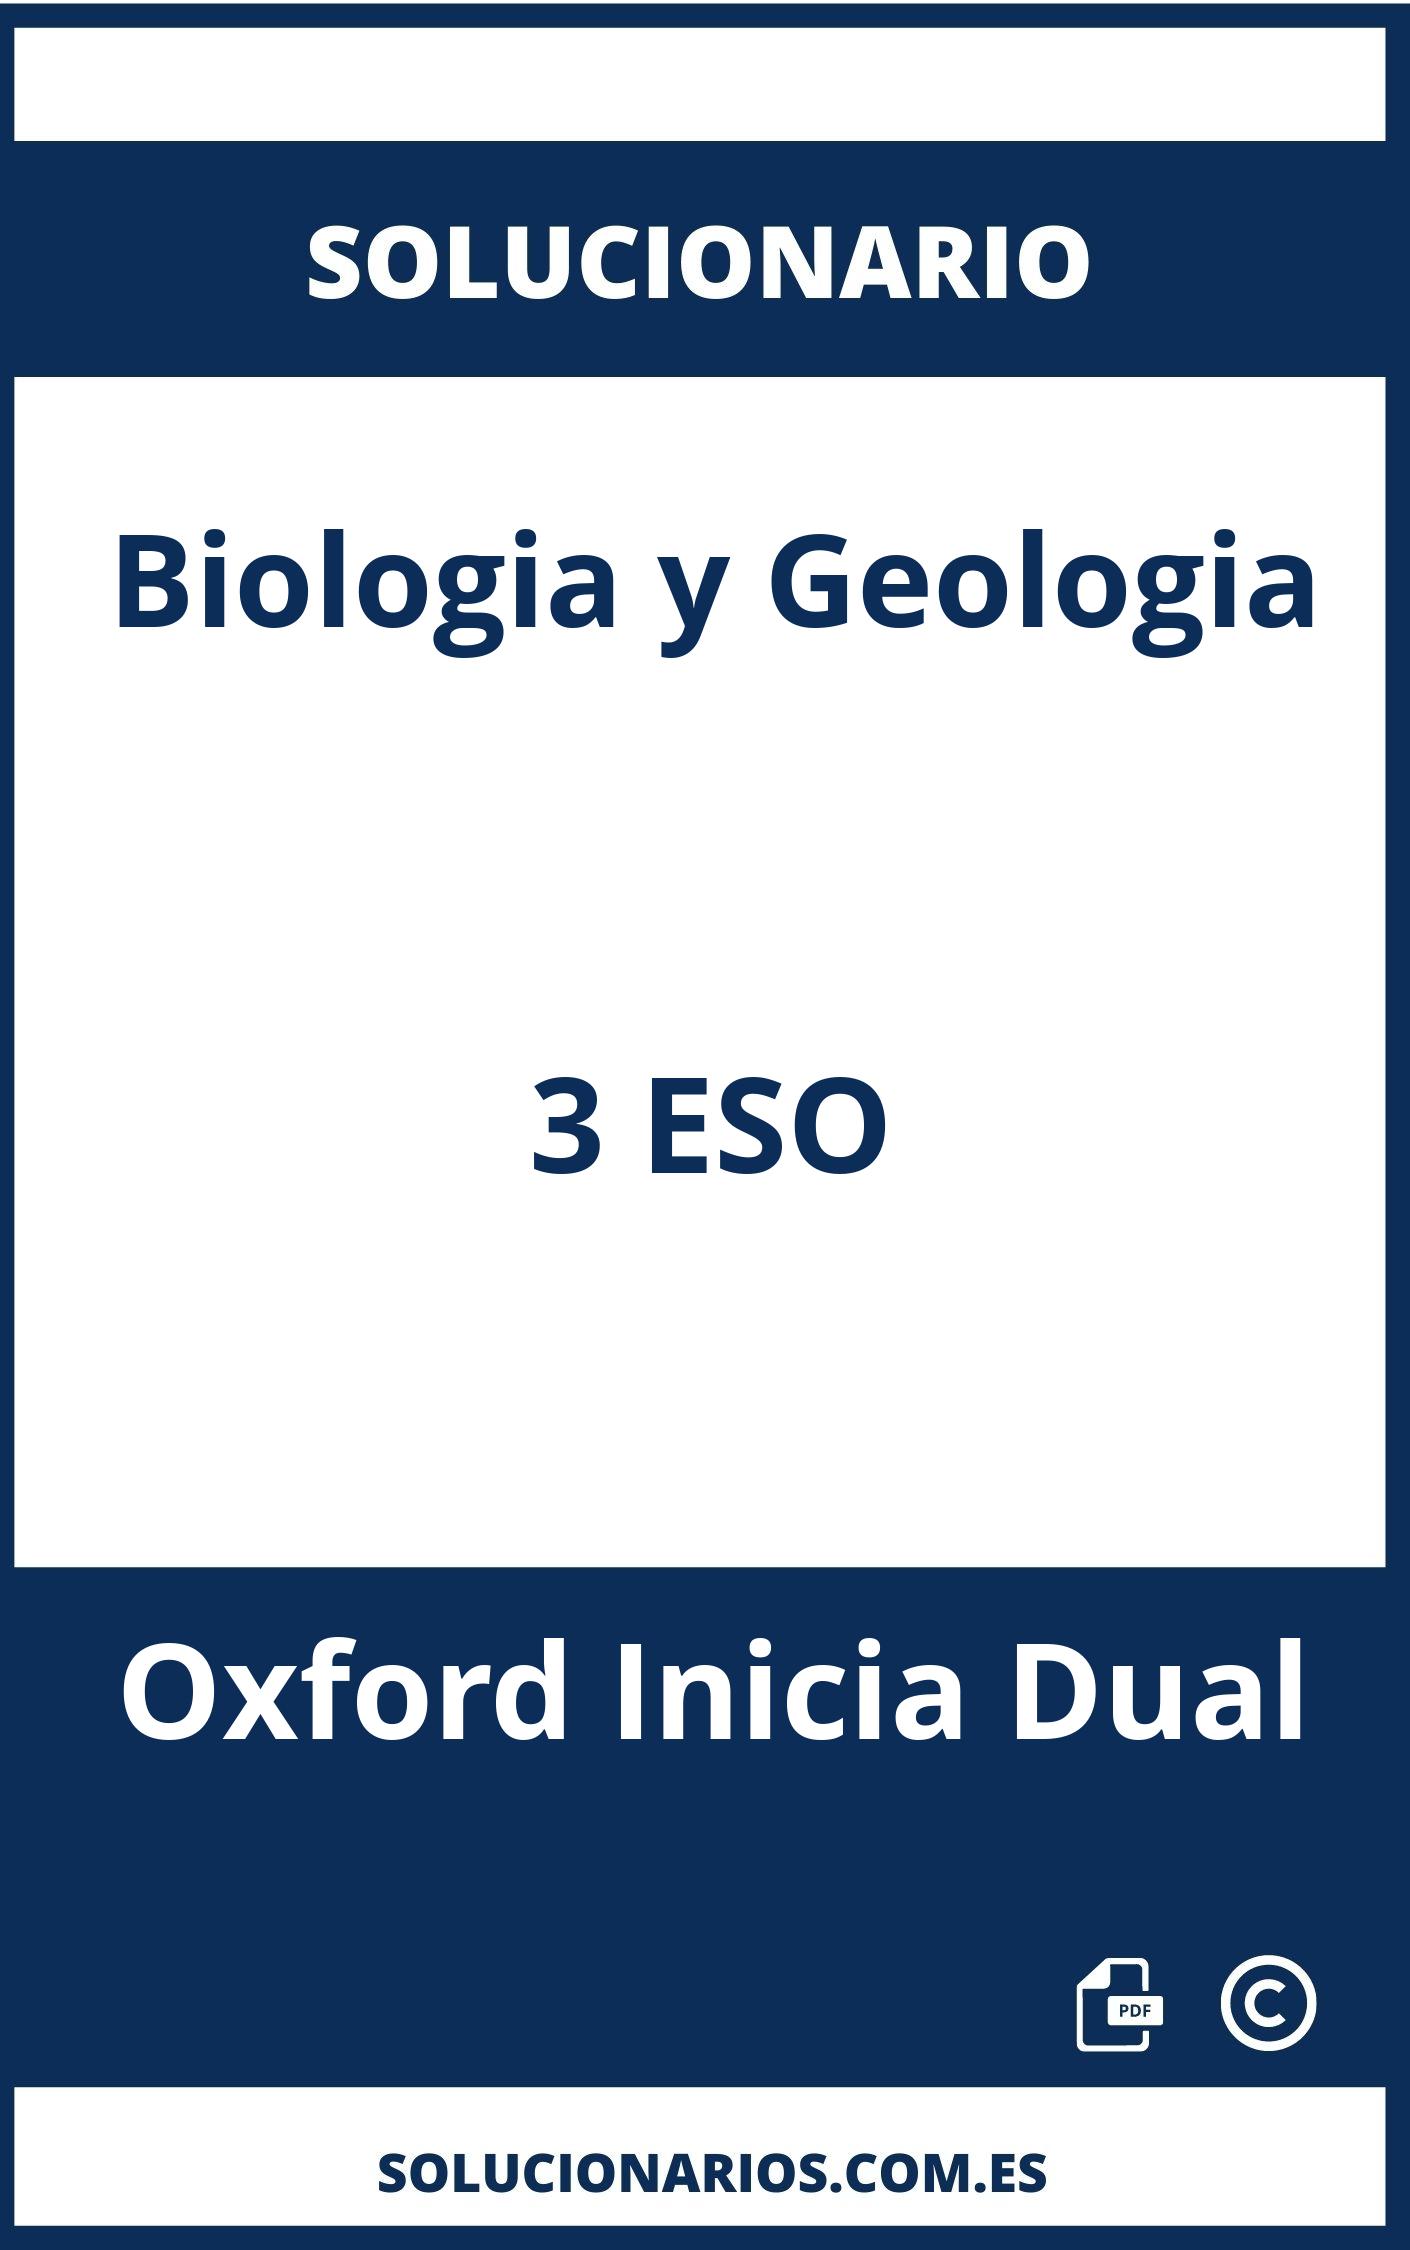 Solucionario Biologia y Geologia 3 ESO Oxford Inicia Dual